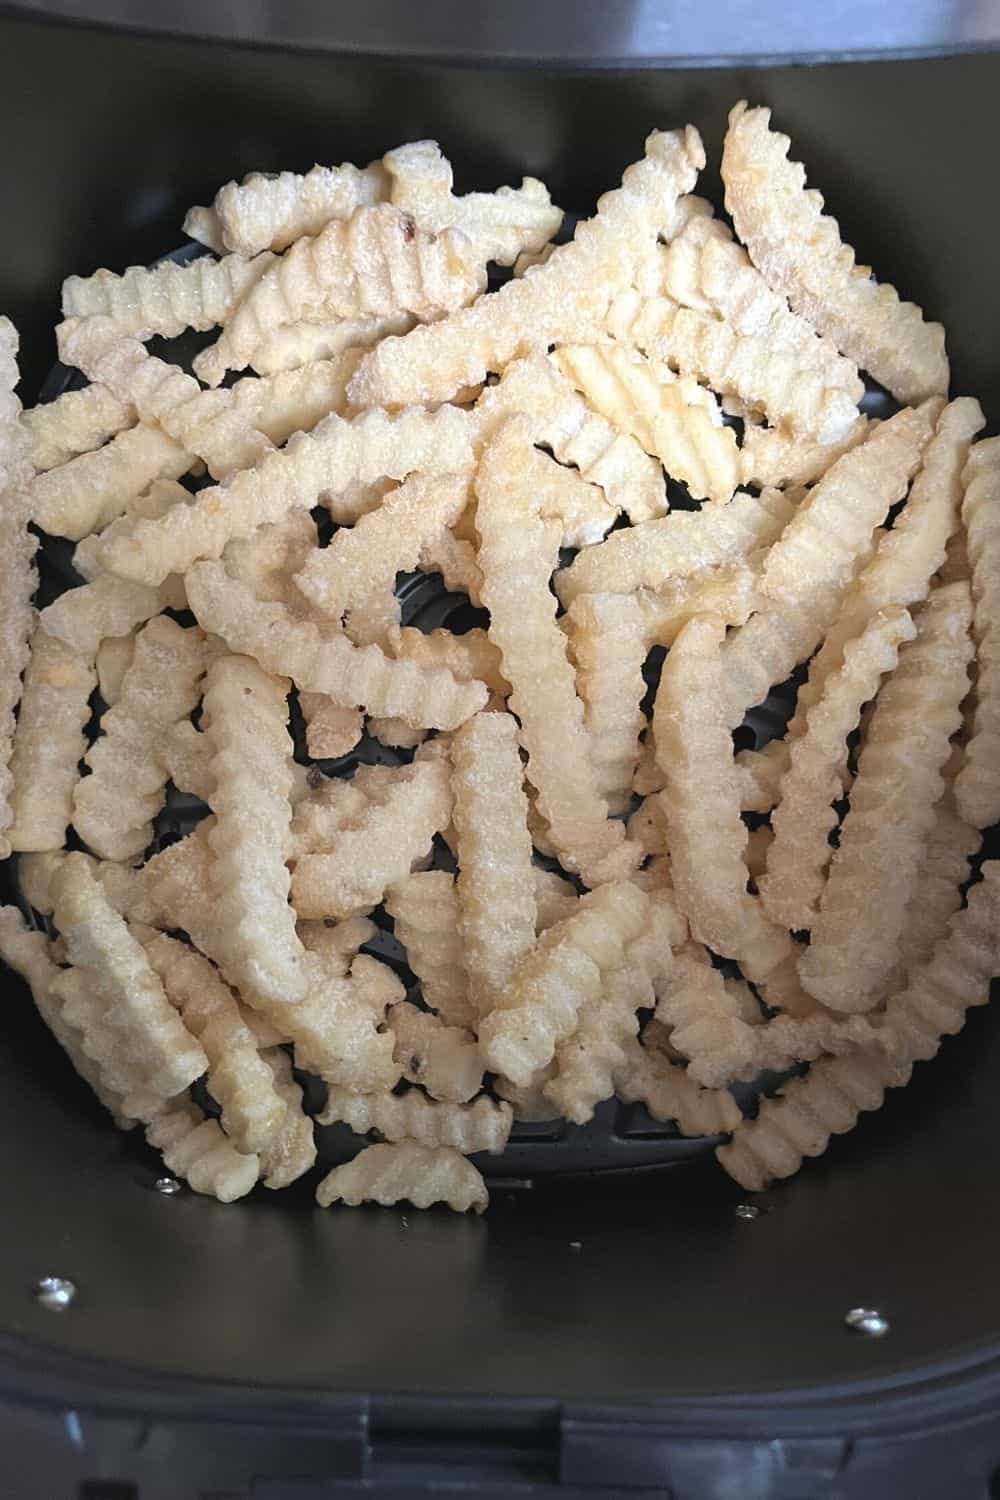 frozen ore-ida crinkle fries in an air fryer basket